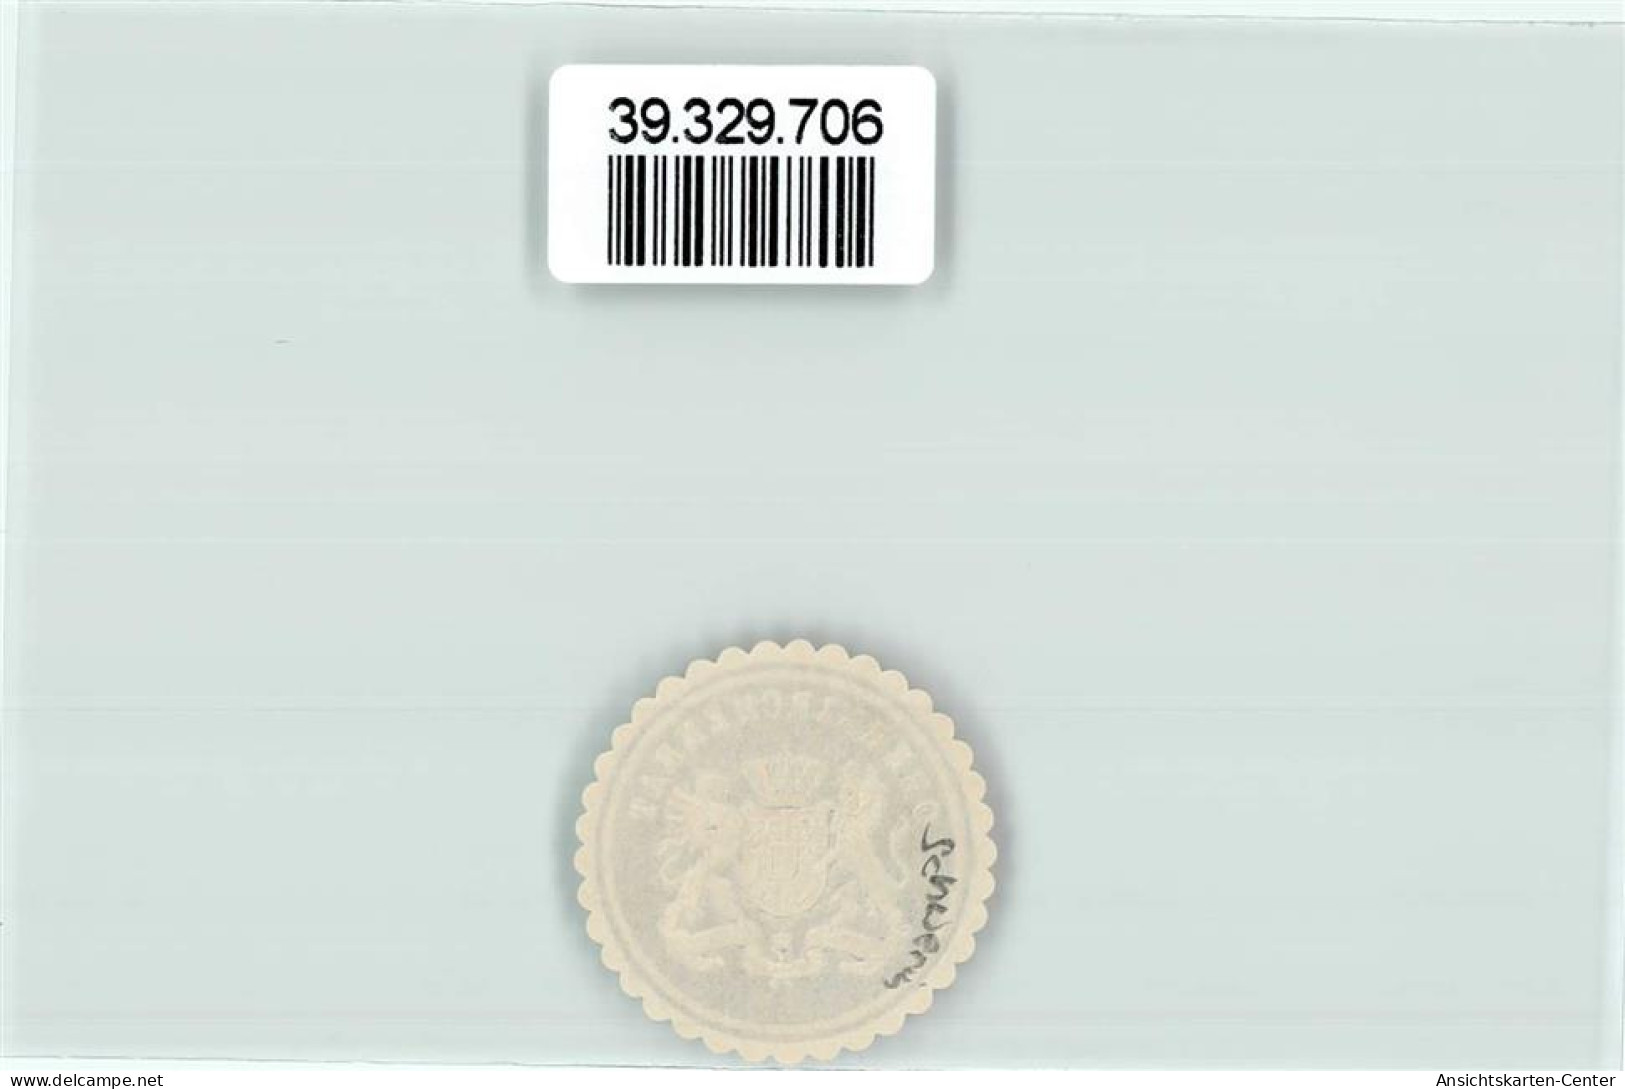 39329706 - Oberkirchenrat - Briefmarken (Abbildungen)